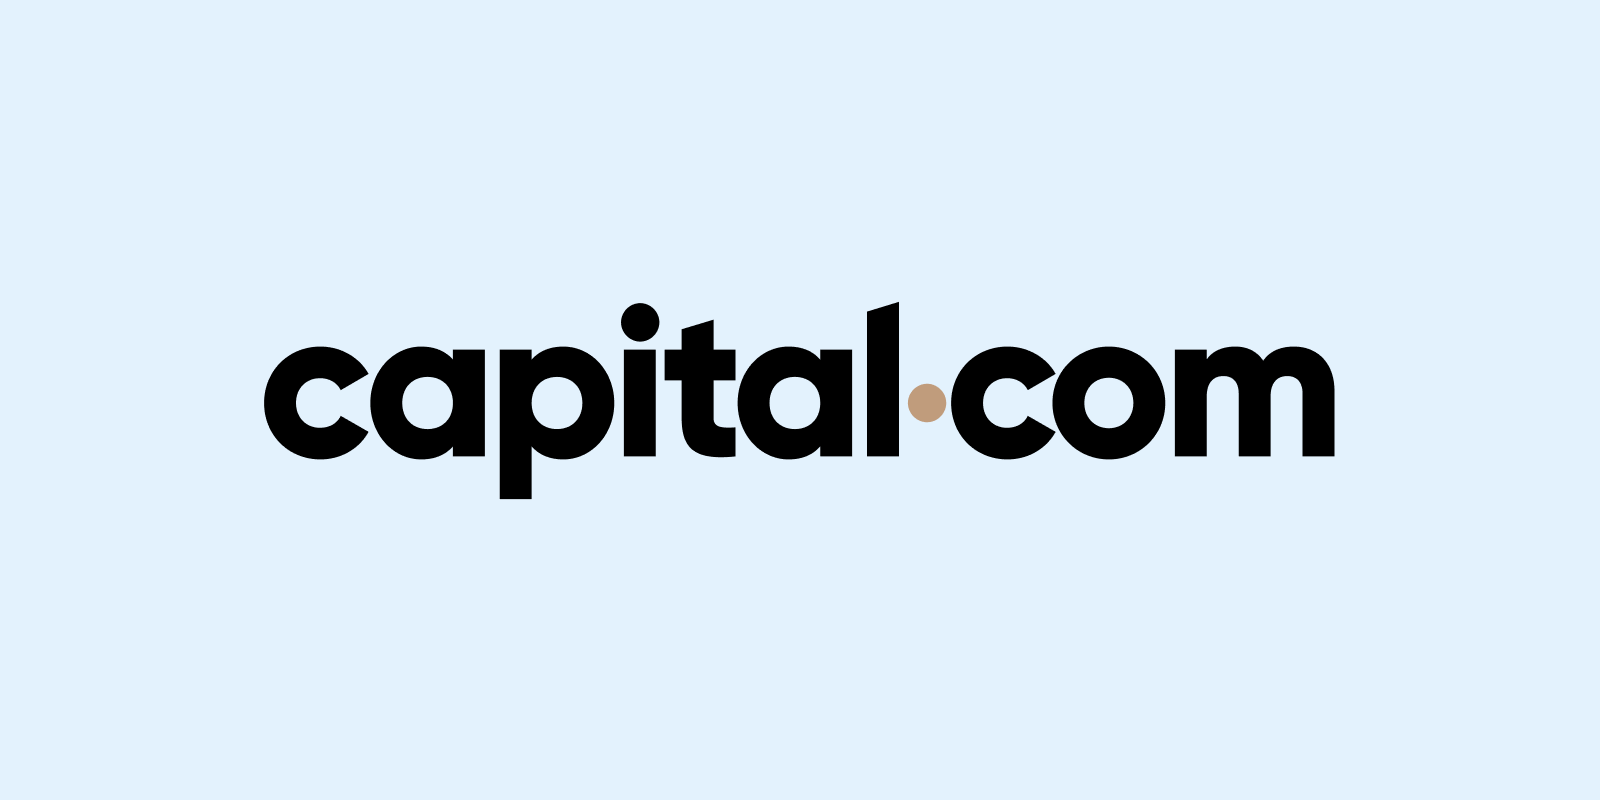 توقفت Capital.com عن قبول عملاء جدد في المملكة المتحدة